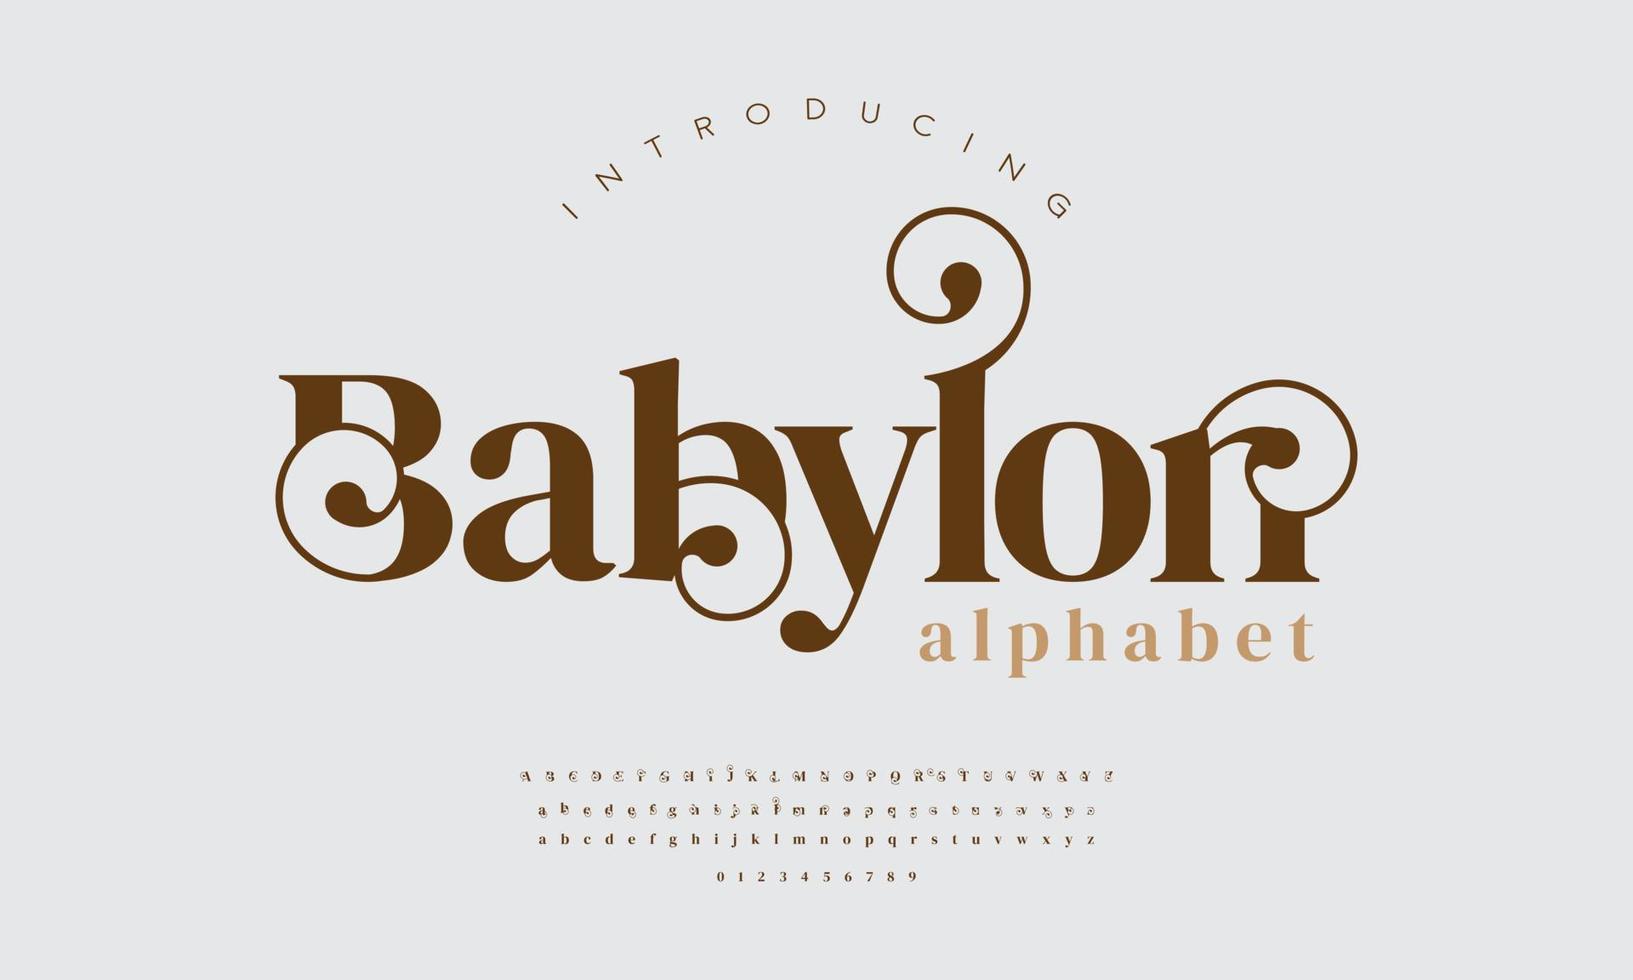 Babylon Ashion doopvont alfabet. minimaal modern stedelijk fonts voor logo, merk enz. typografie lettertype hoofdletters kleine letters en nummer. vector illustratie